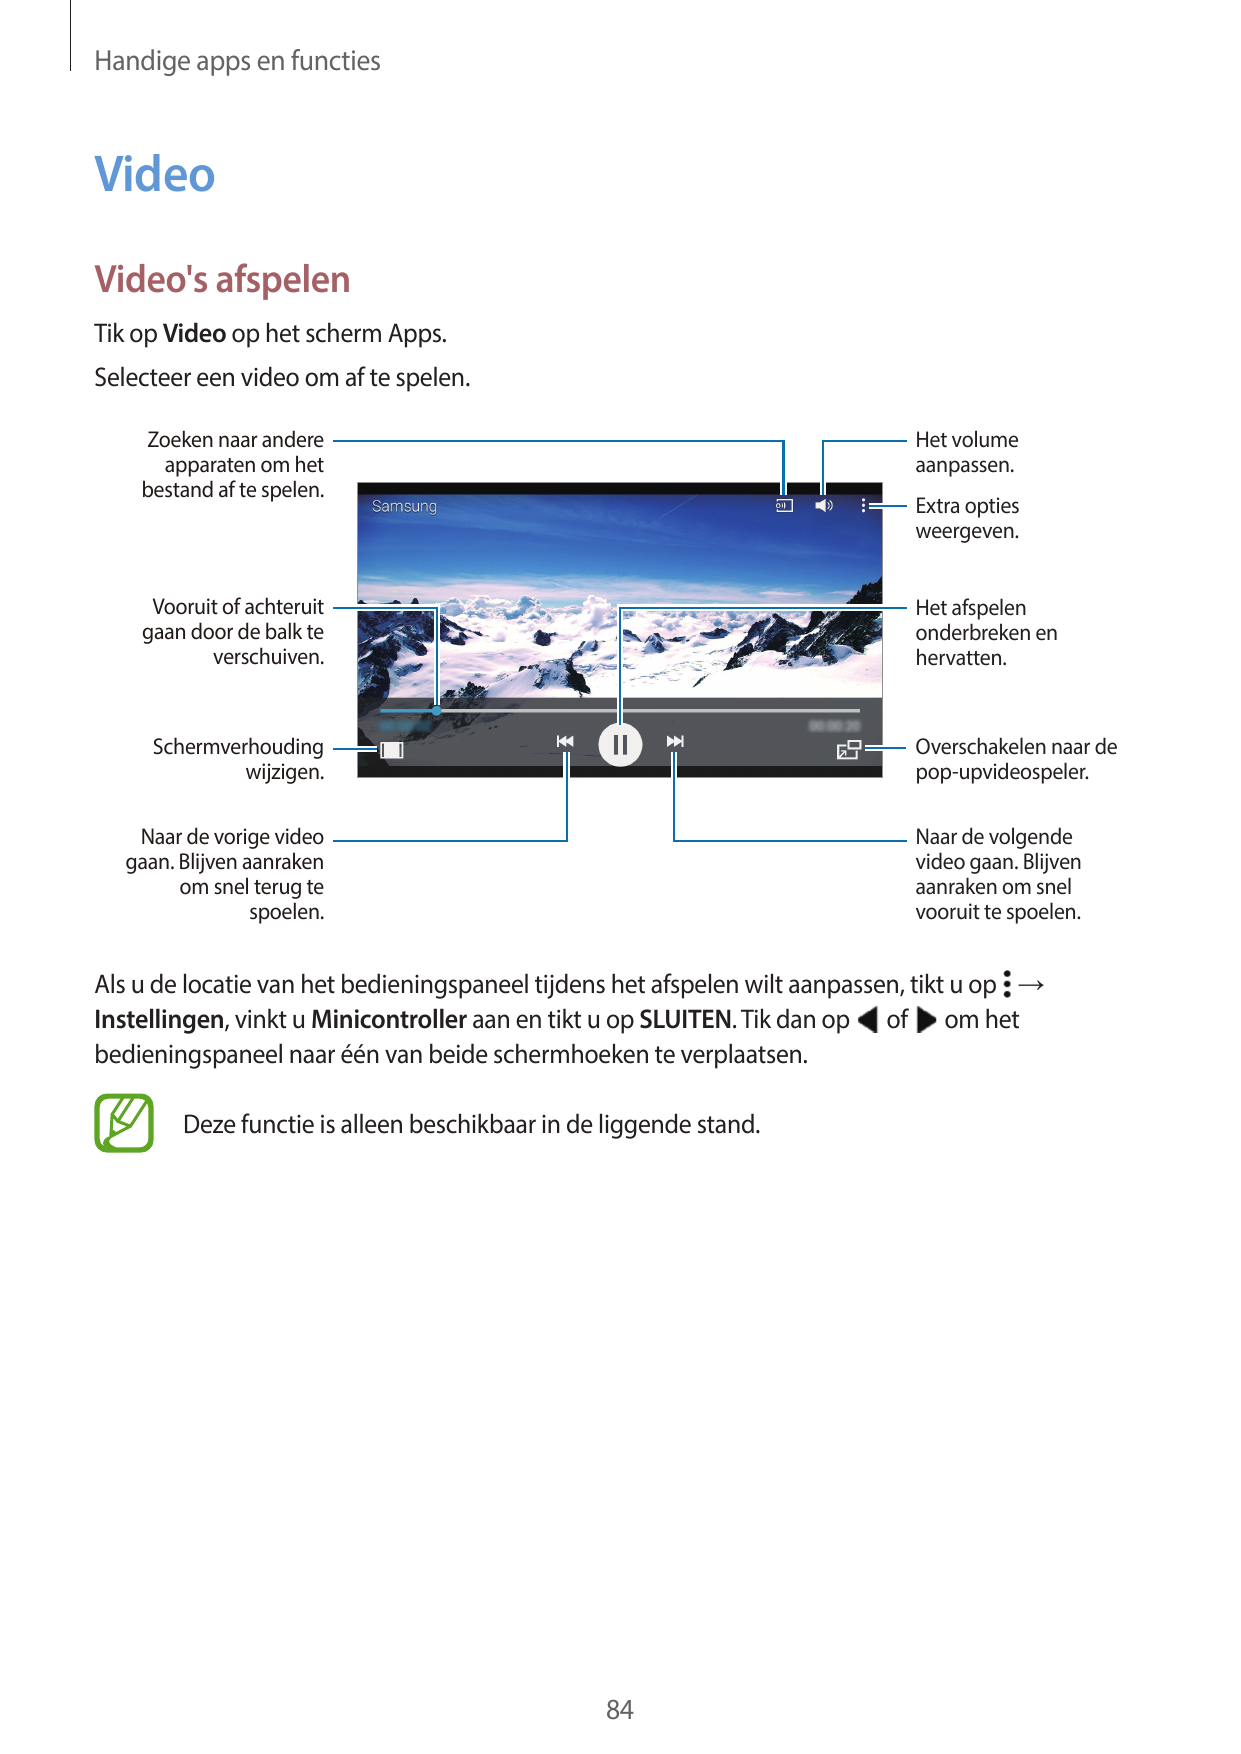 Handige apps en functiesVideoVideo's afspelenTik op Video op het scherm Apps.Selecteer een video om af te spelen.Zoeken naar and